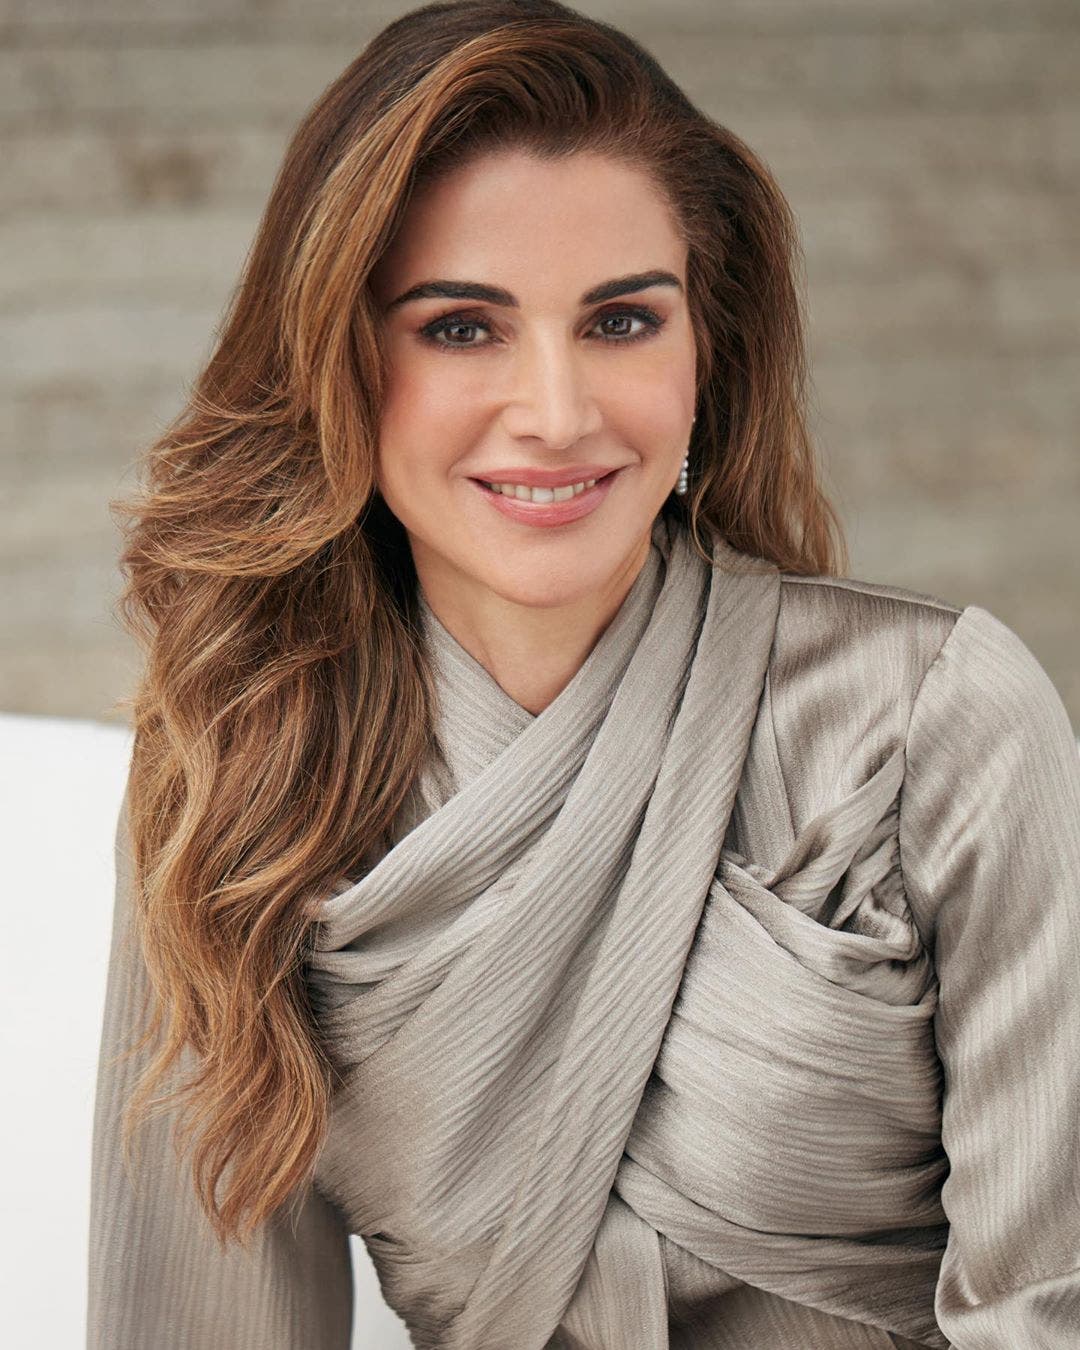 الملكة رانيا بإطلالة تحمل توقيع المصممة اللبنانية دارين هاشم